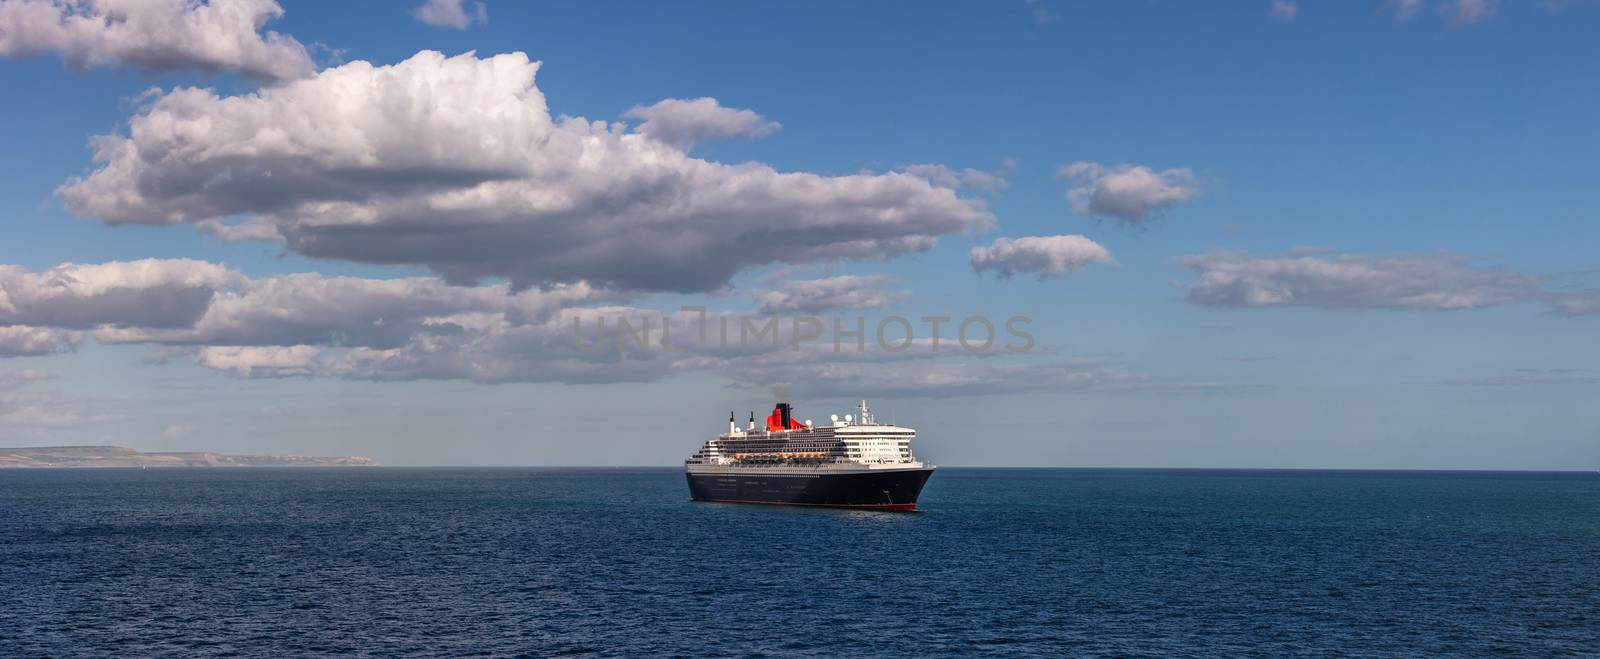 Cunard cruise ship Queen Mary 2 in Weymouth Bay by DamantisZ